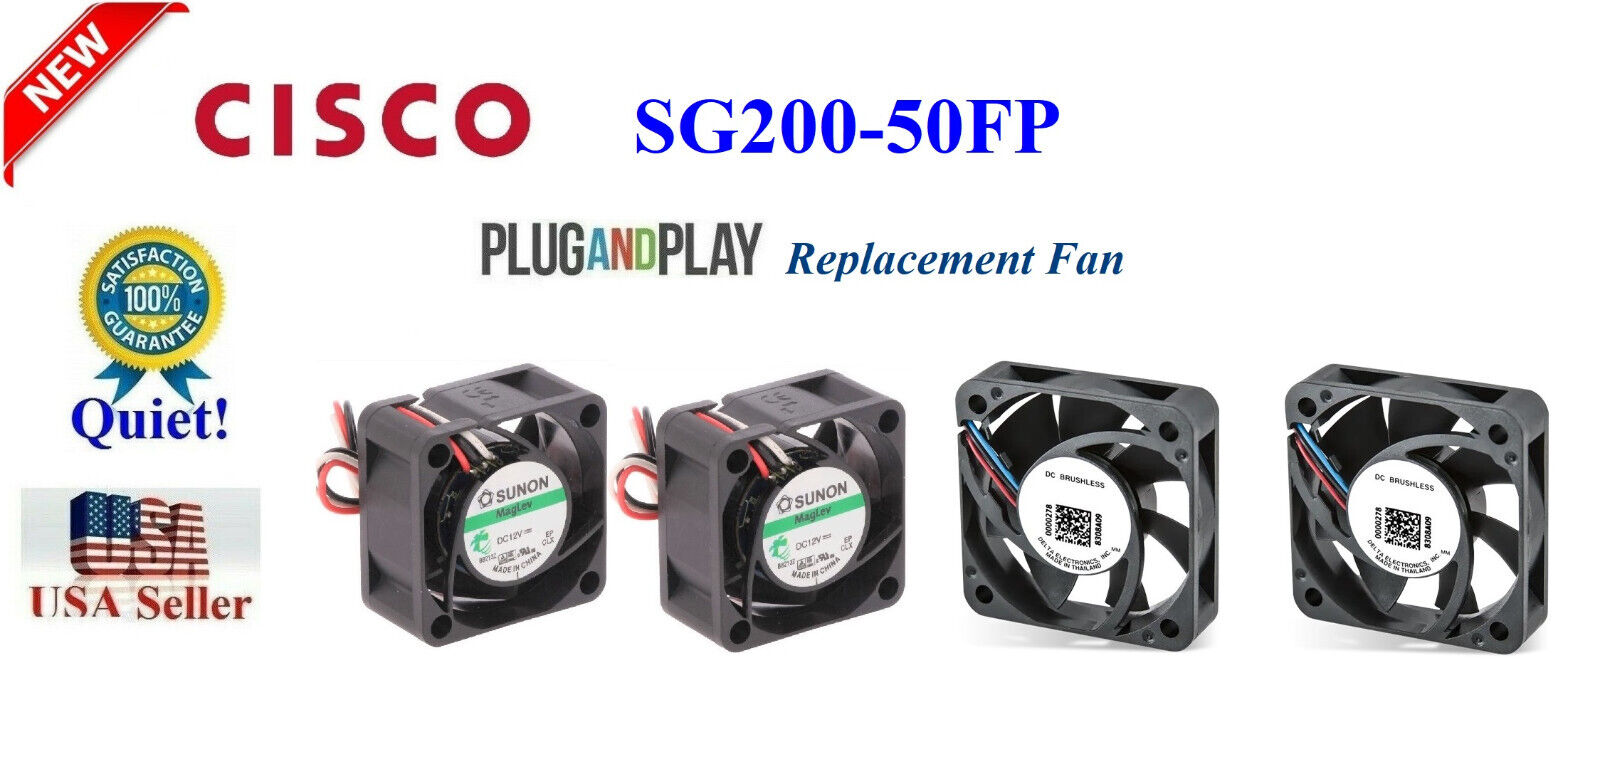 4x Quiet Version Replacement Fans for Cisco SG200-50FP (18dBA Noise)